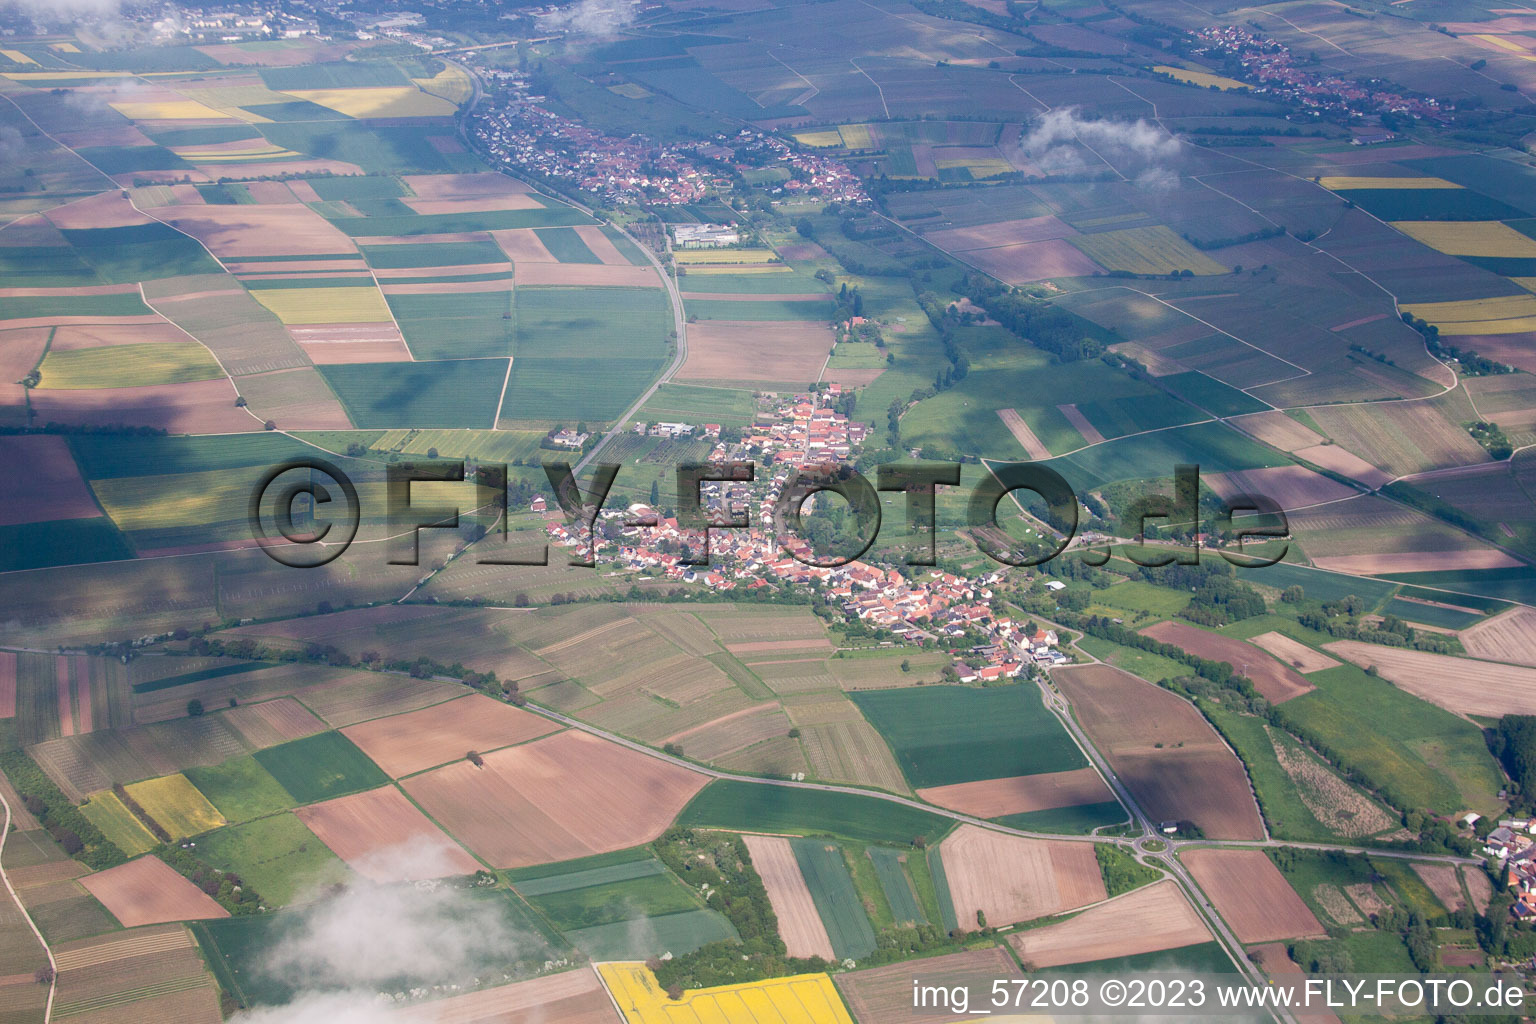 Oberhausen im Bundesland Rheinland-Pfalz, Deutschland aus der Luft betrachtet